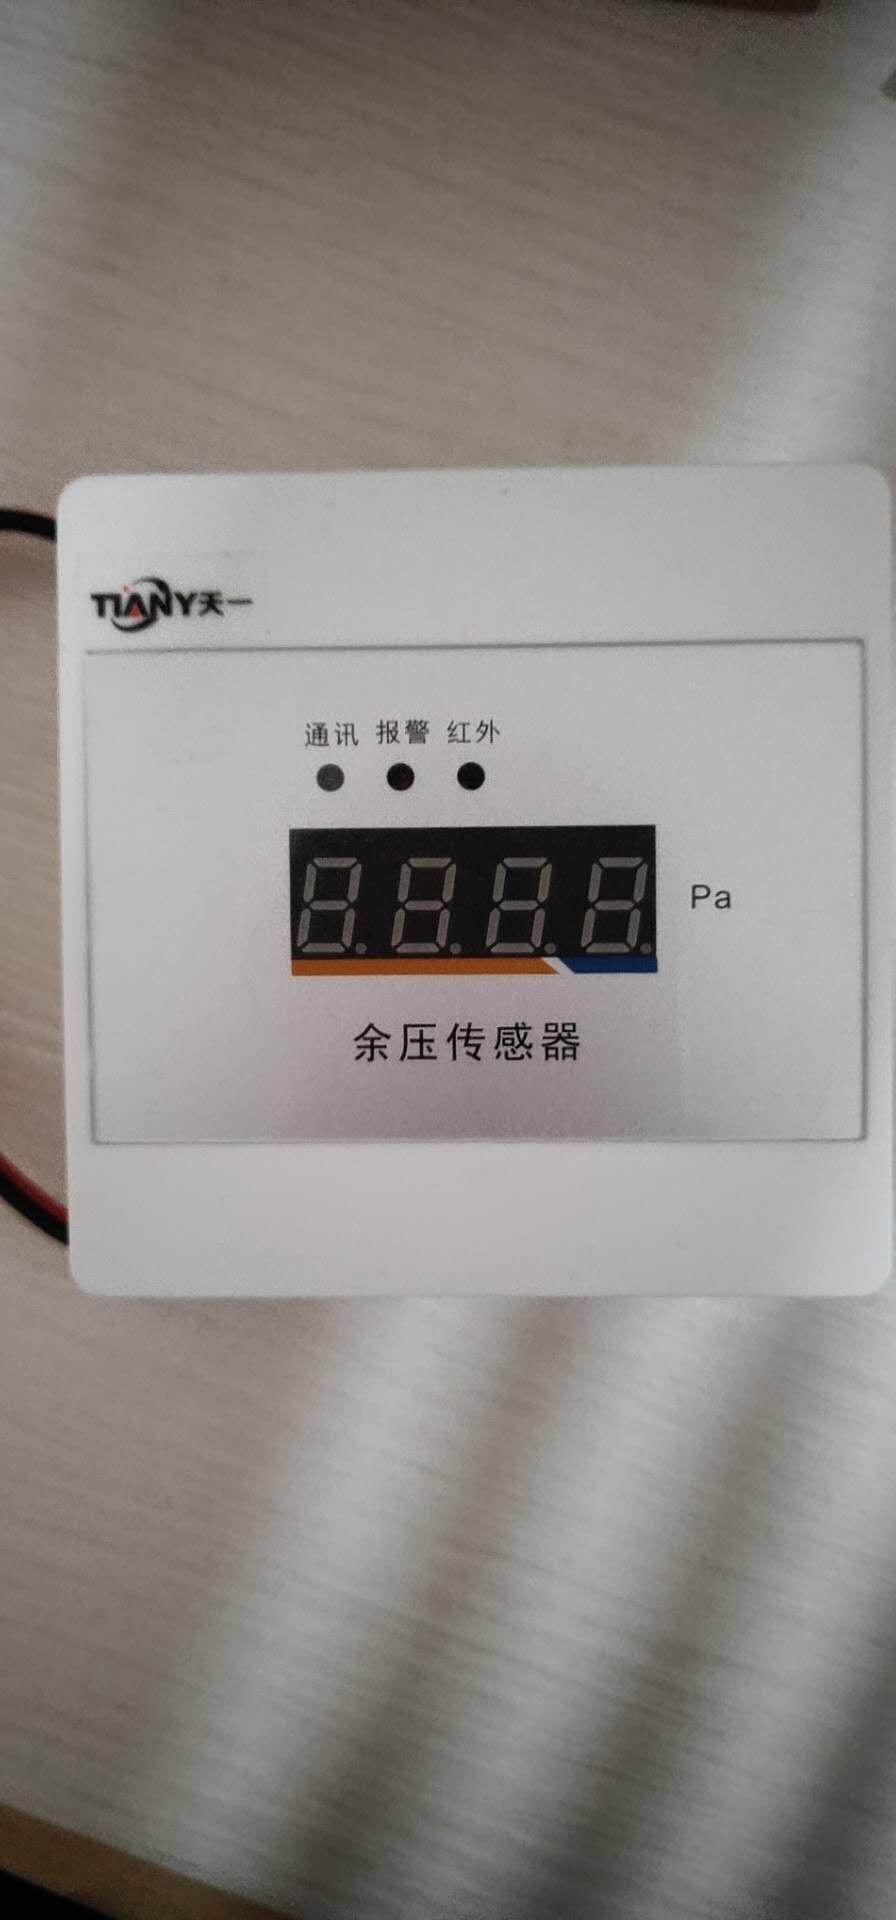 二总线余压监控系统 暗装 黑龙江哈尔滨可发货 厂家直销 性价比高